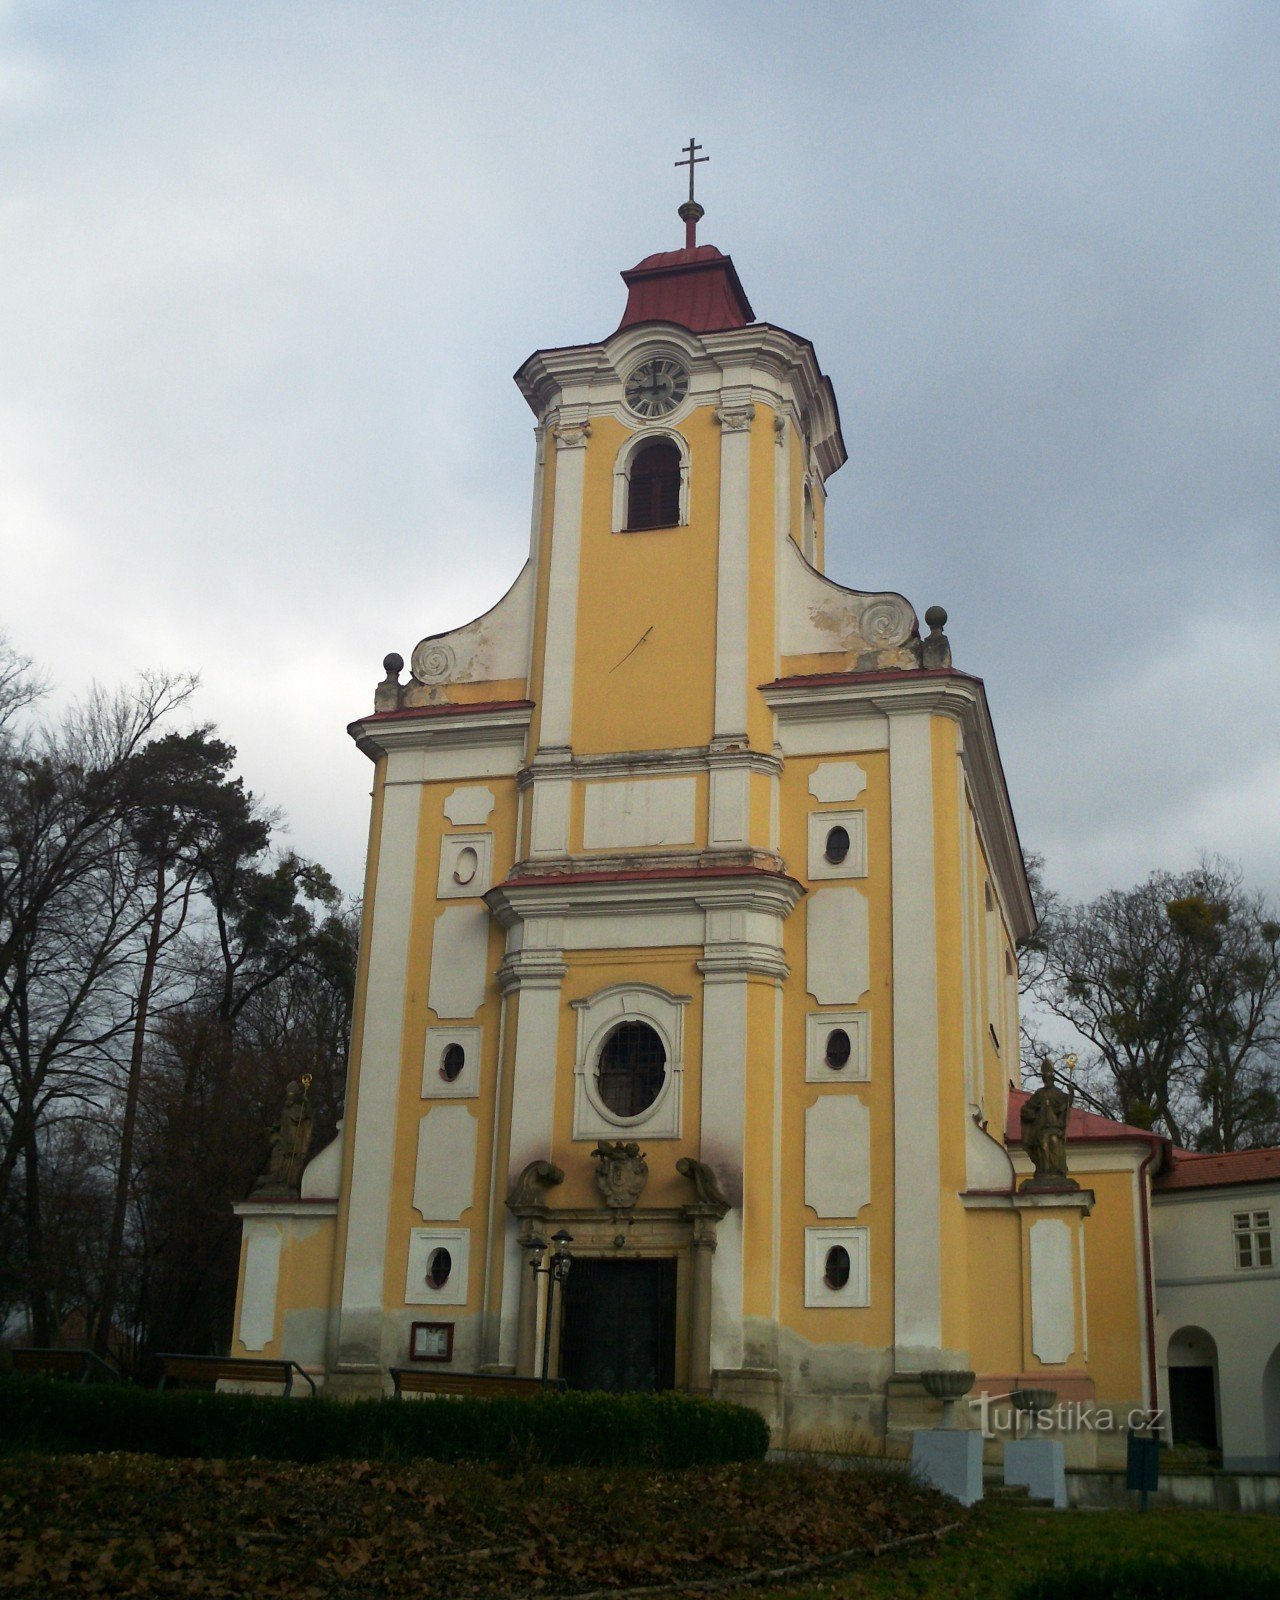 Pohořelice - crkva sv. Jan Nepomucký